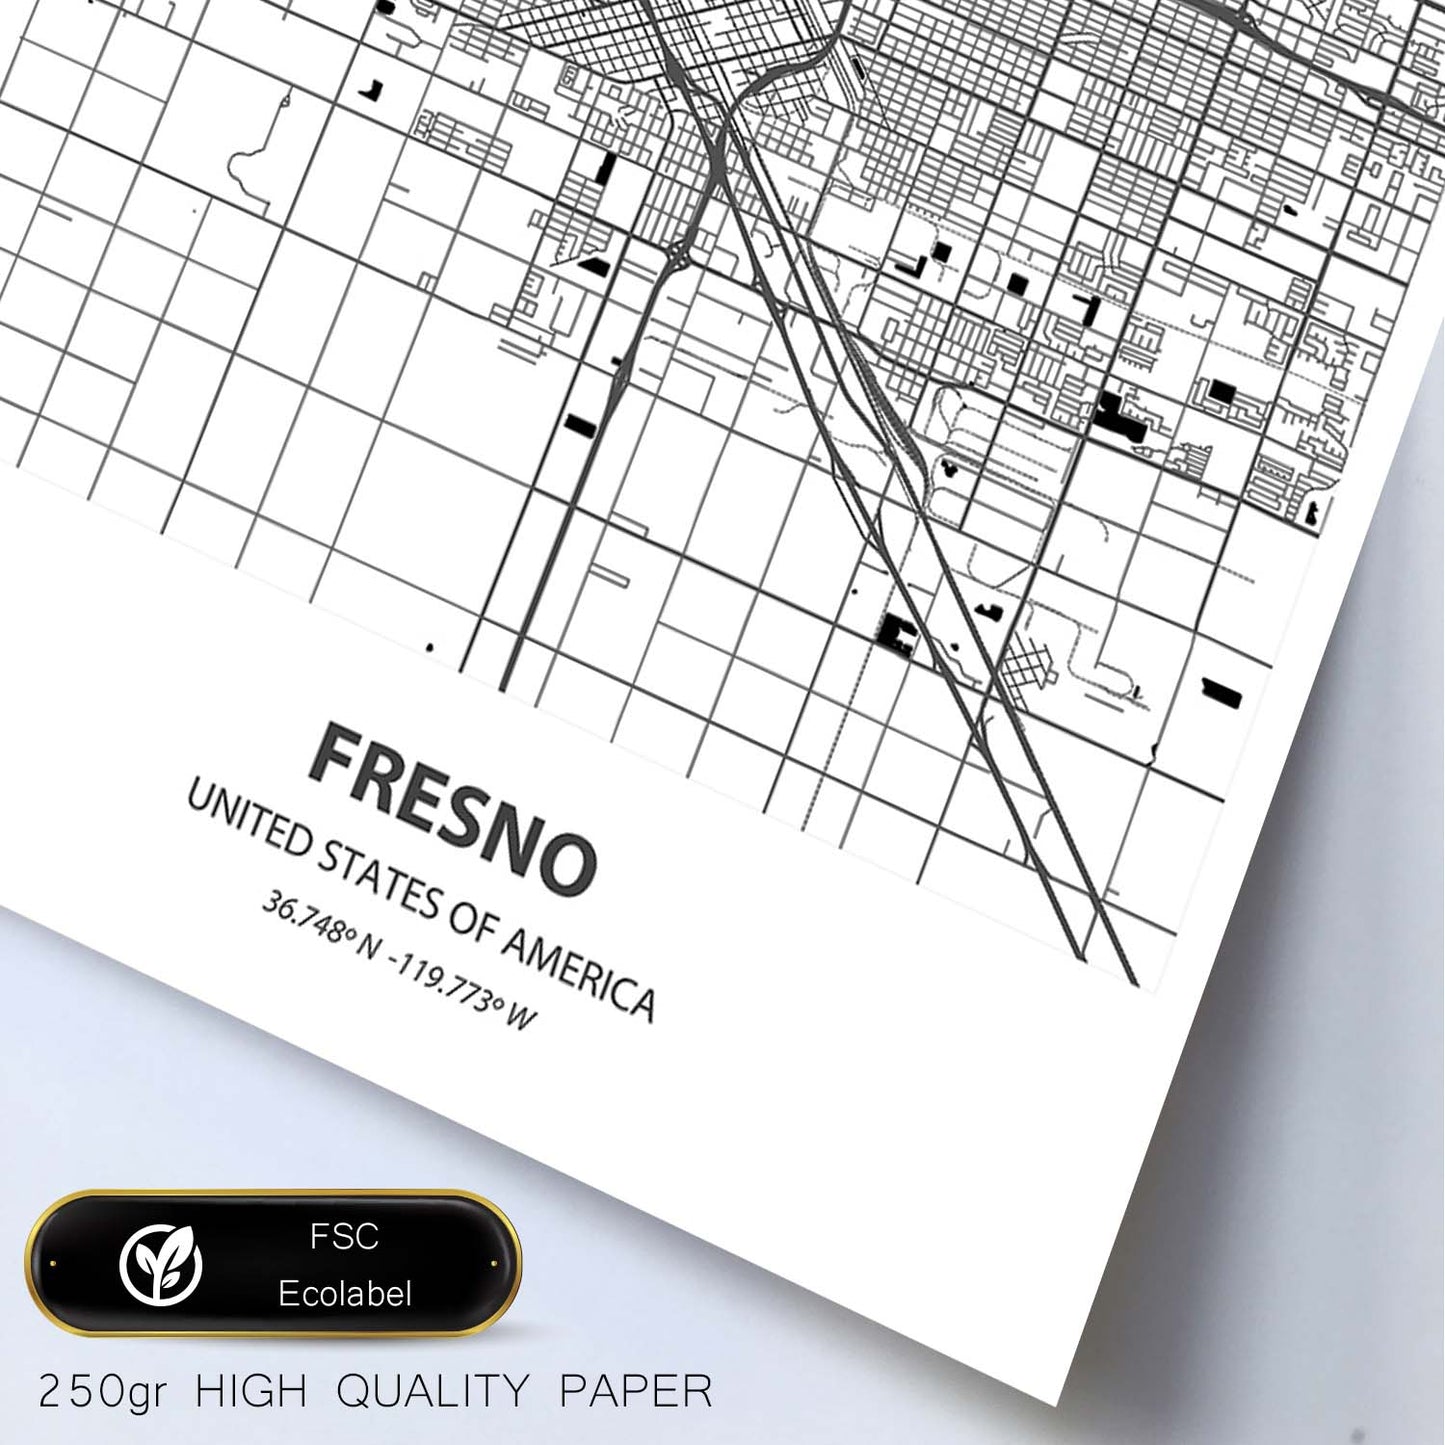 Poster con mapa de Fresno - USA. Láminas de ciudades de Estados Unidos con mares y ríos en color negro.-Artwork-Nacnic-Nacnic Estudio SL